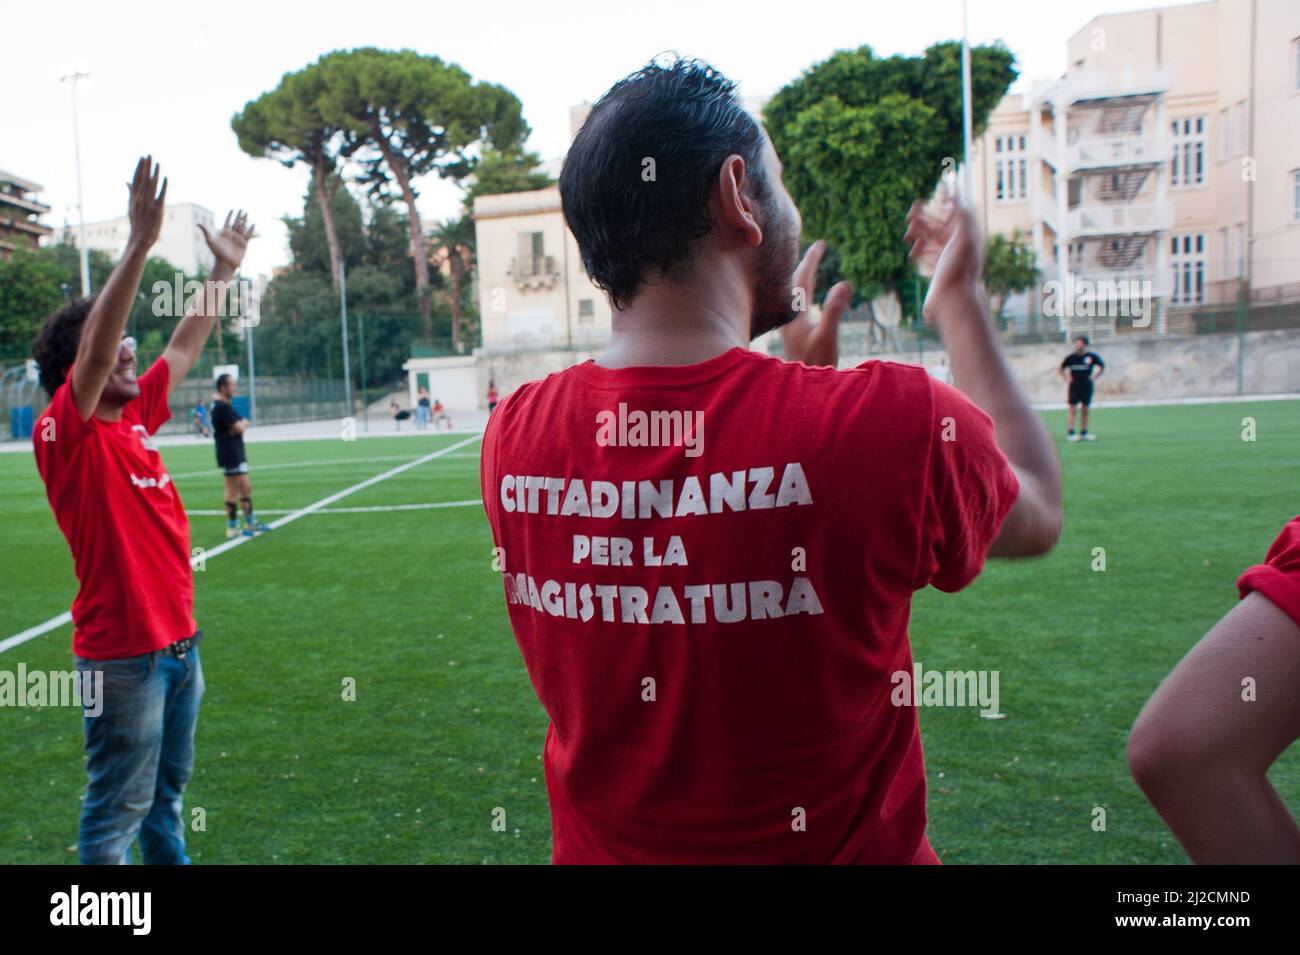 Palermo, Italia 17/07/2012: Ventesimo anniversario dei massacri del '92. Partita di calcio tra la squadra dei magistrati e quella del movimento rosso agende, campi sportivi Gonzaga. ©Andrea Sabbadini Foto Stock